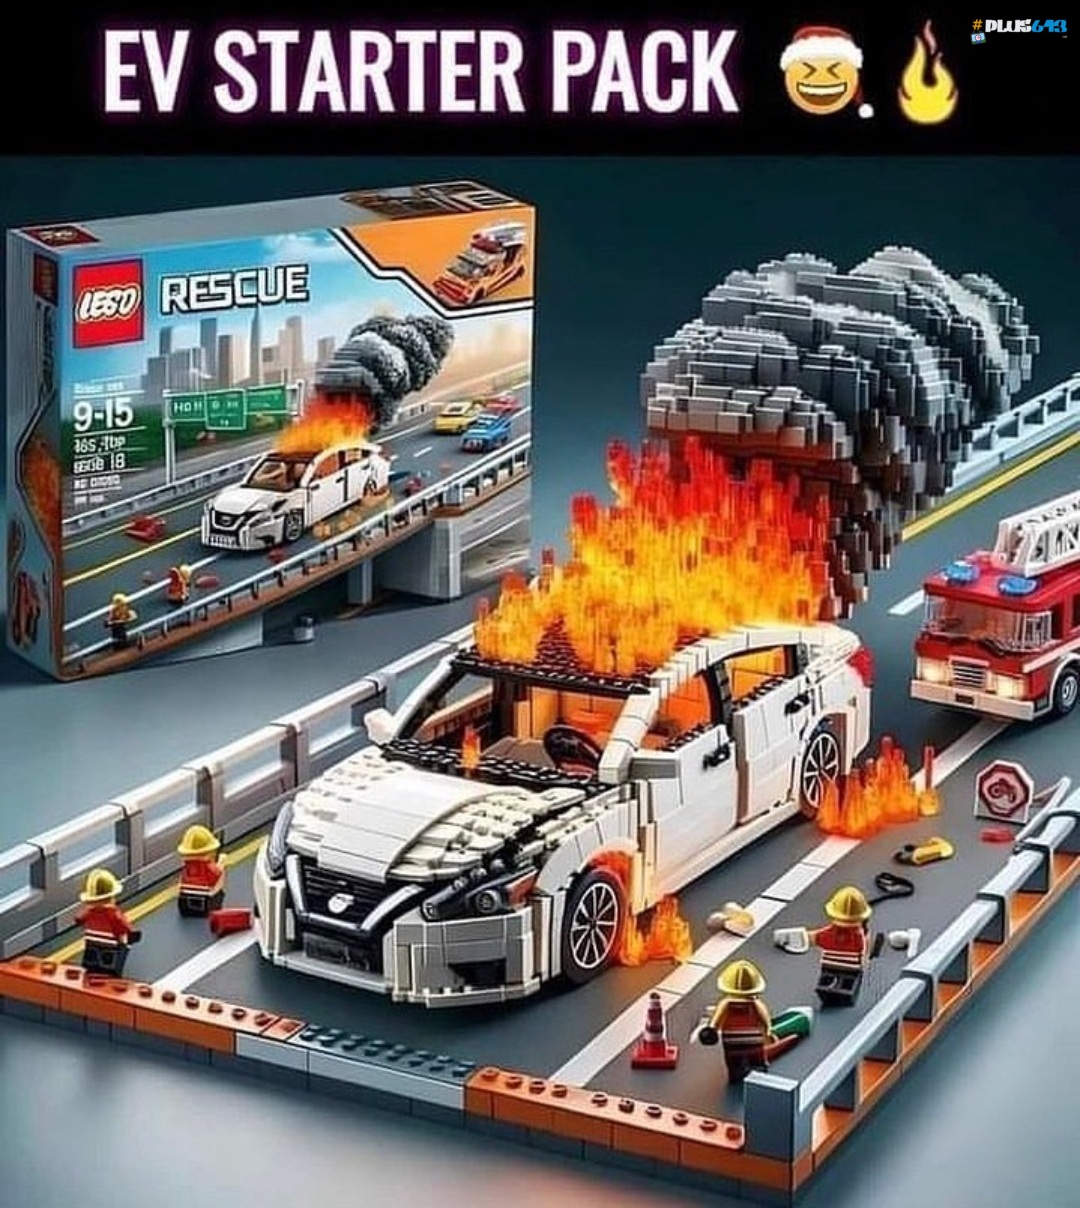 EV Lego starter pack